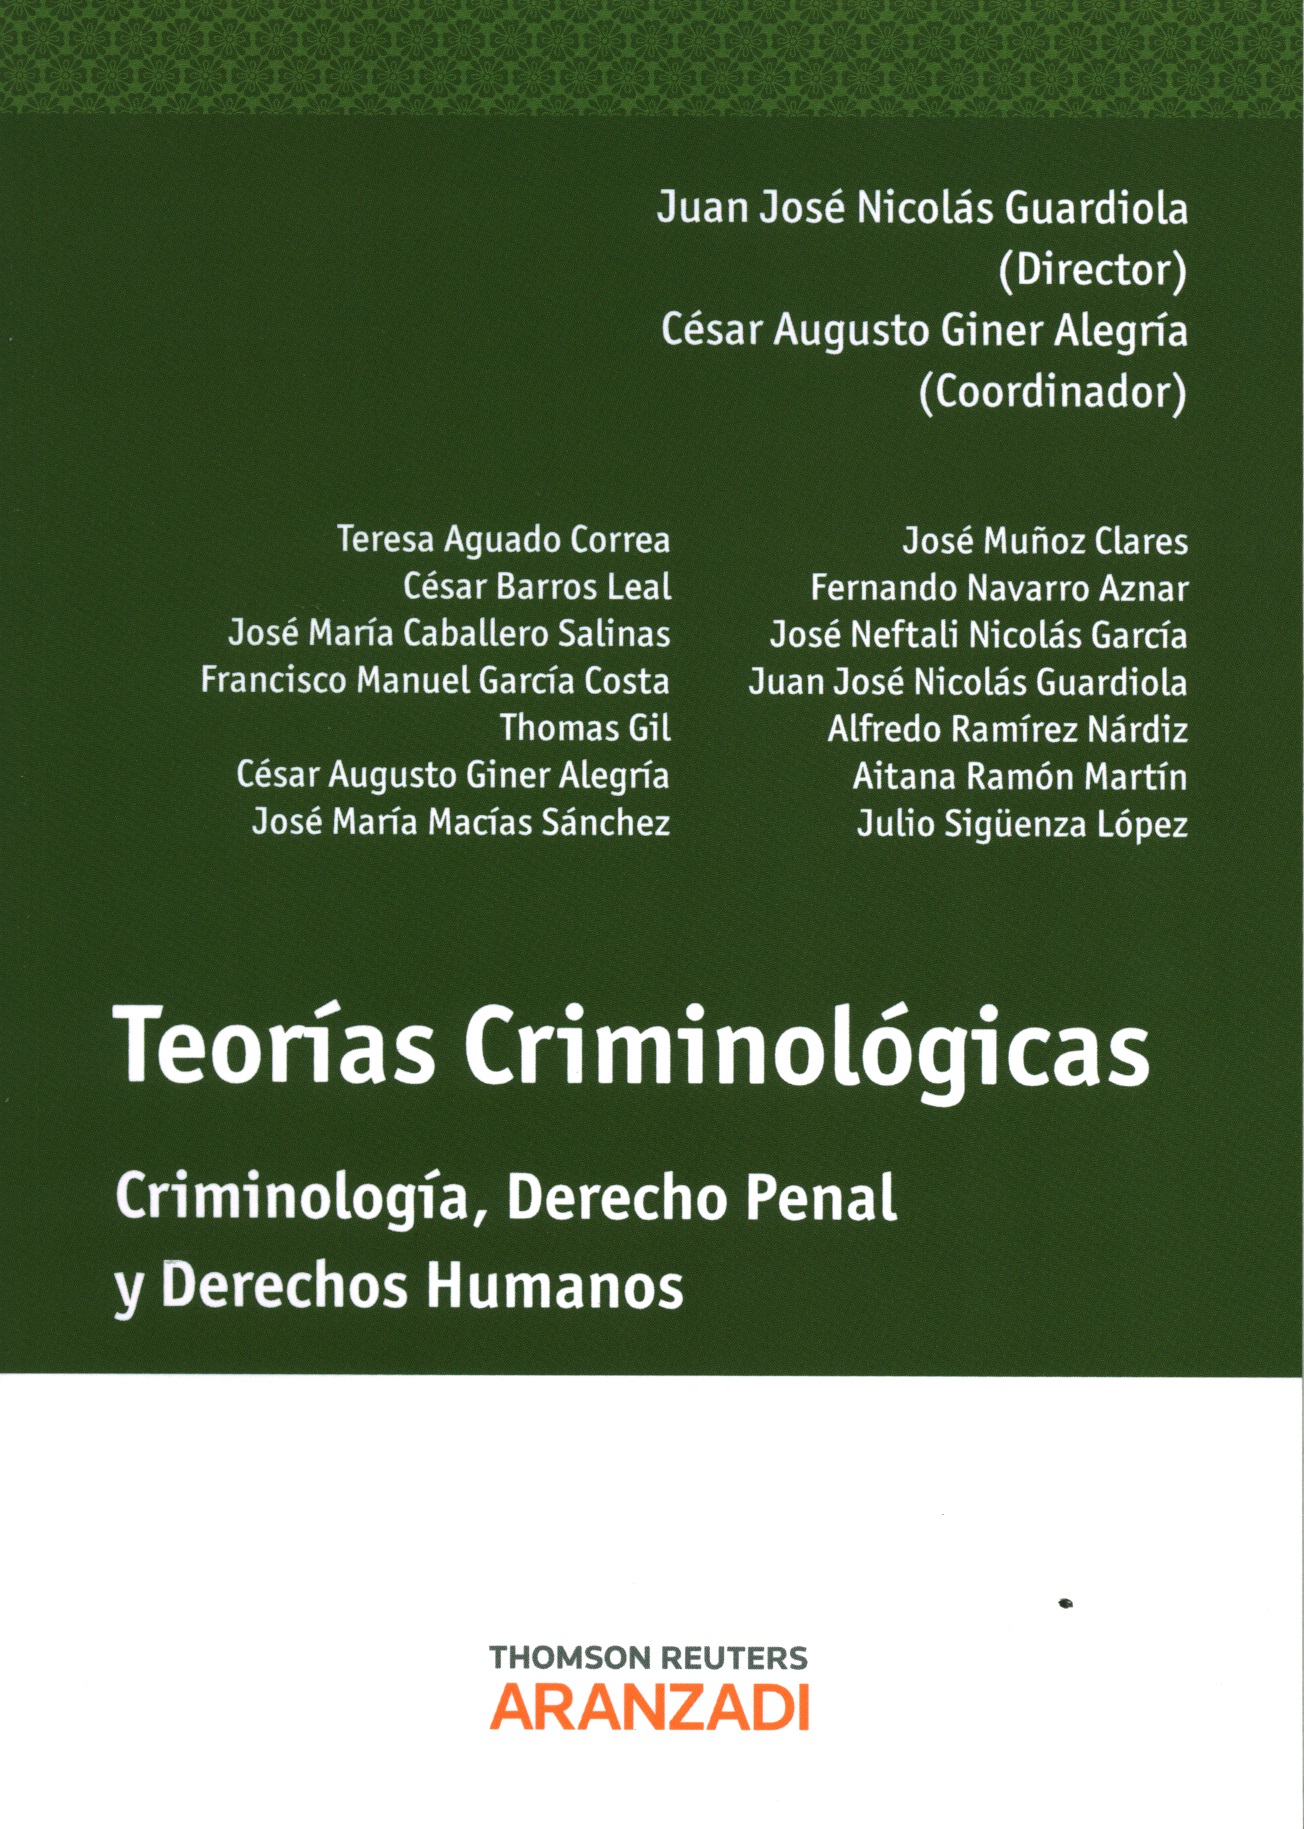 Teorías criminológicas. Criminología, derecho penal y derechos humanos.